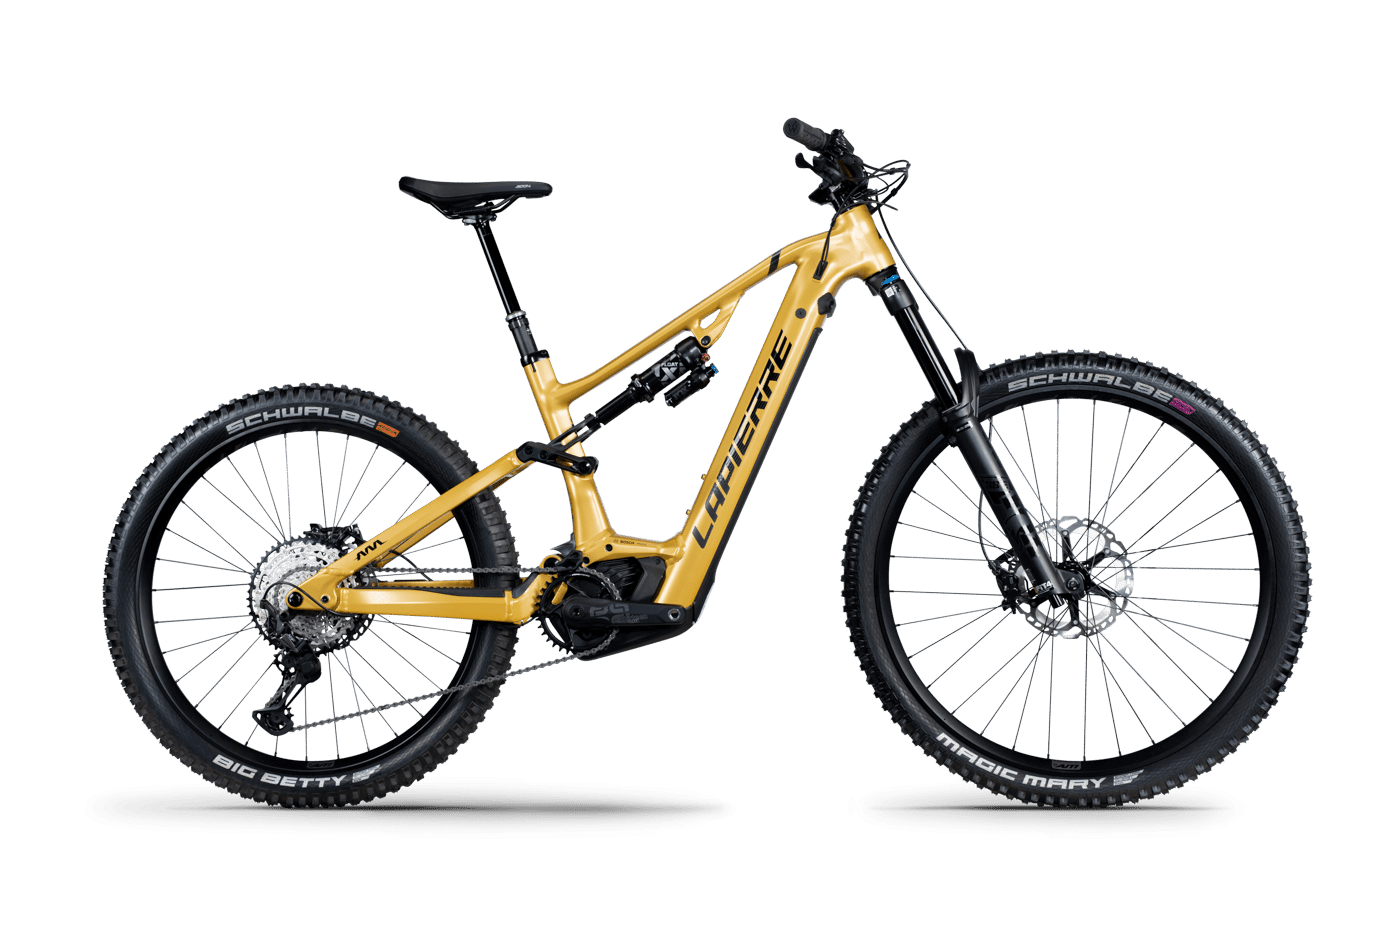 Vélo VTT enfant 6 à 9 ans alu - LAPIERRE 2022 ProRace 20 - noir décor  orange et bleu - Vélo 9